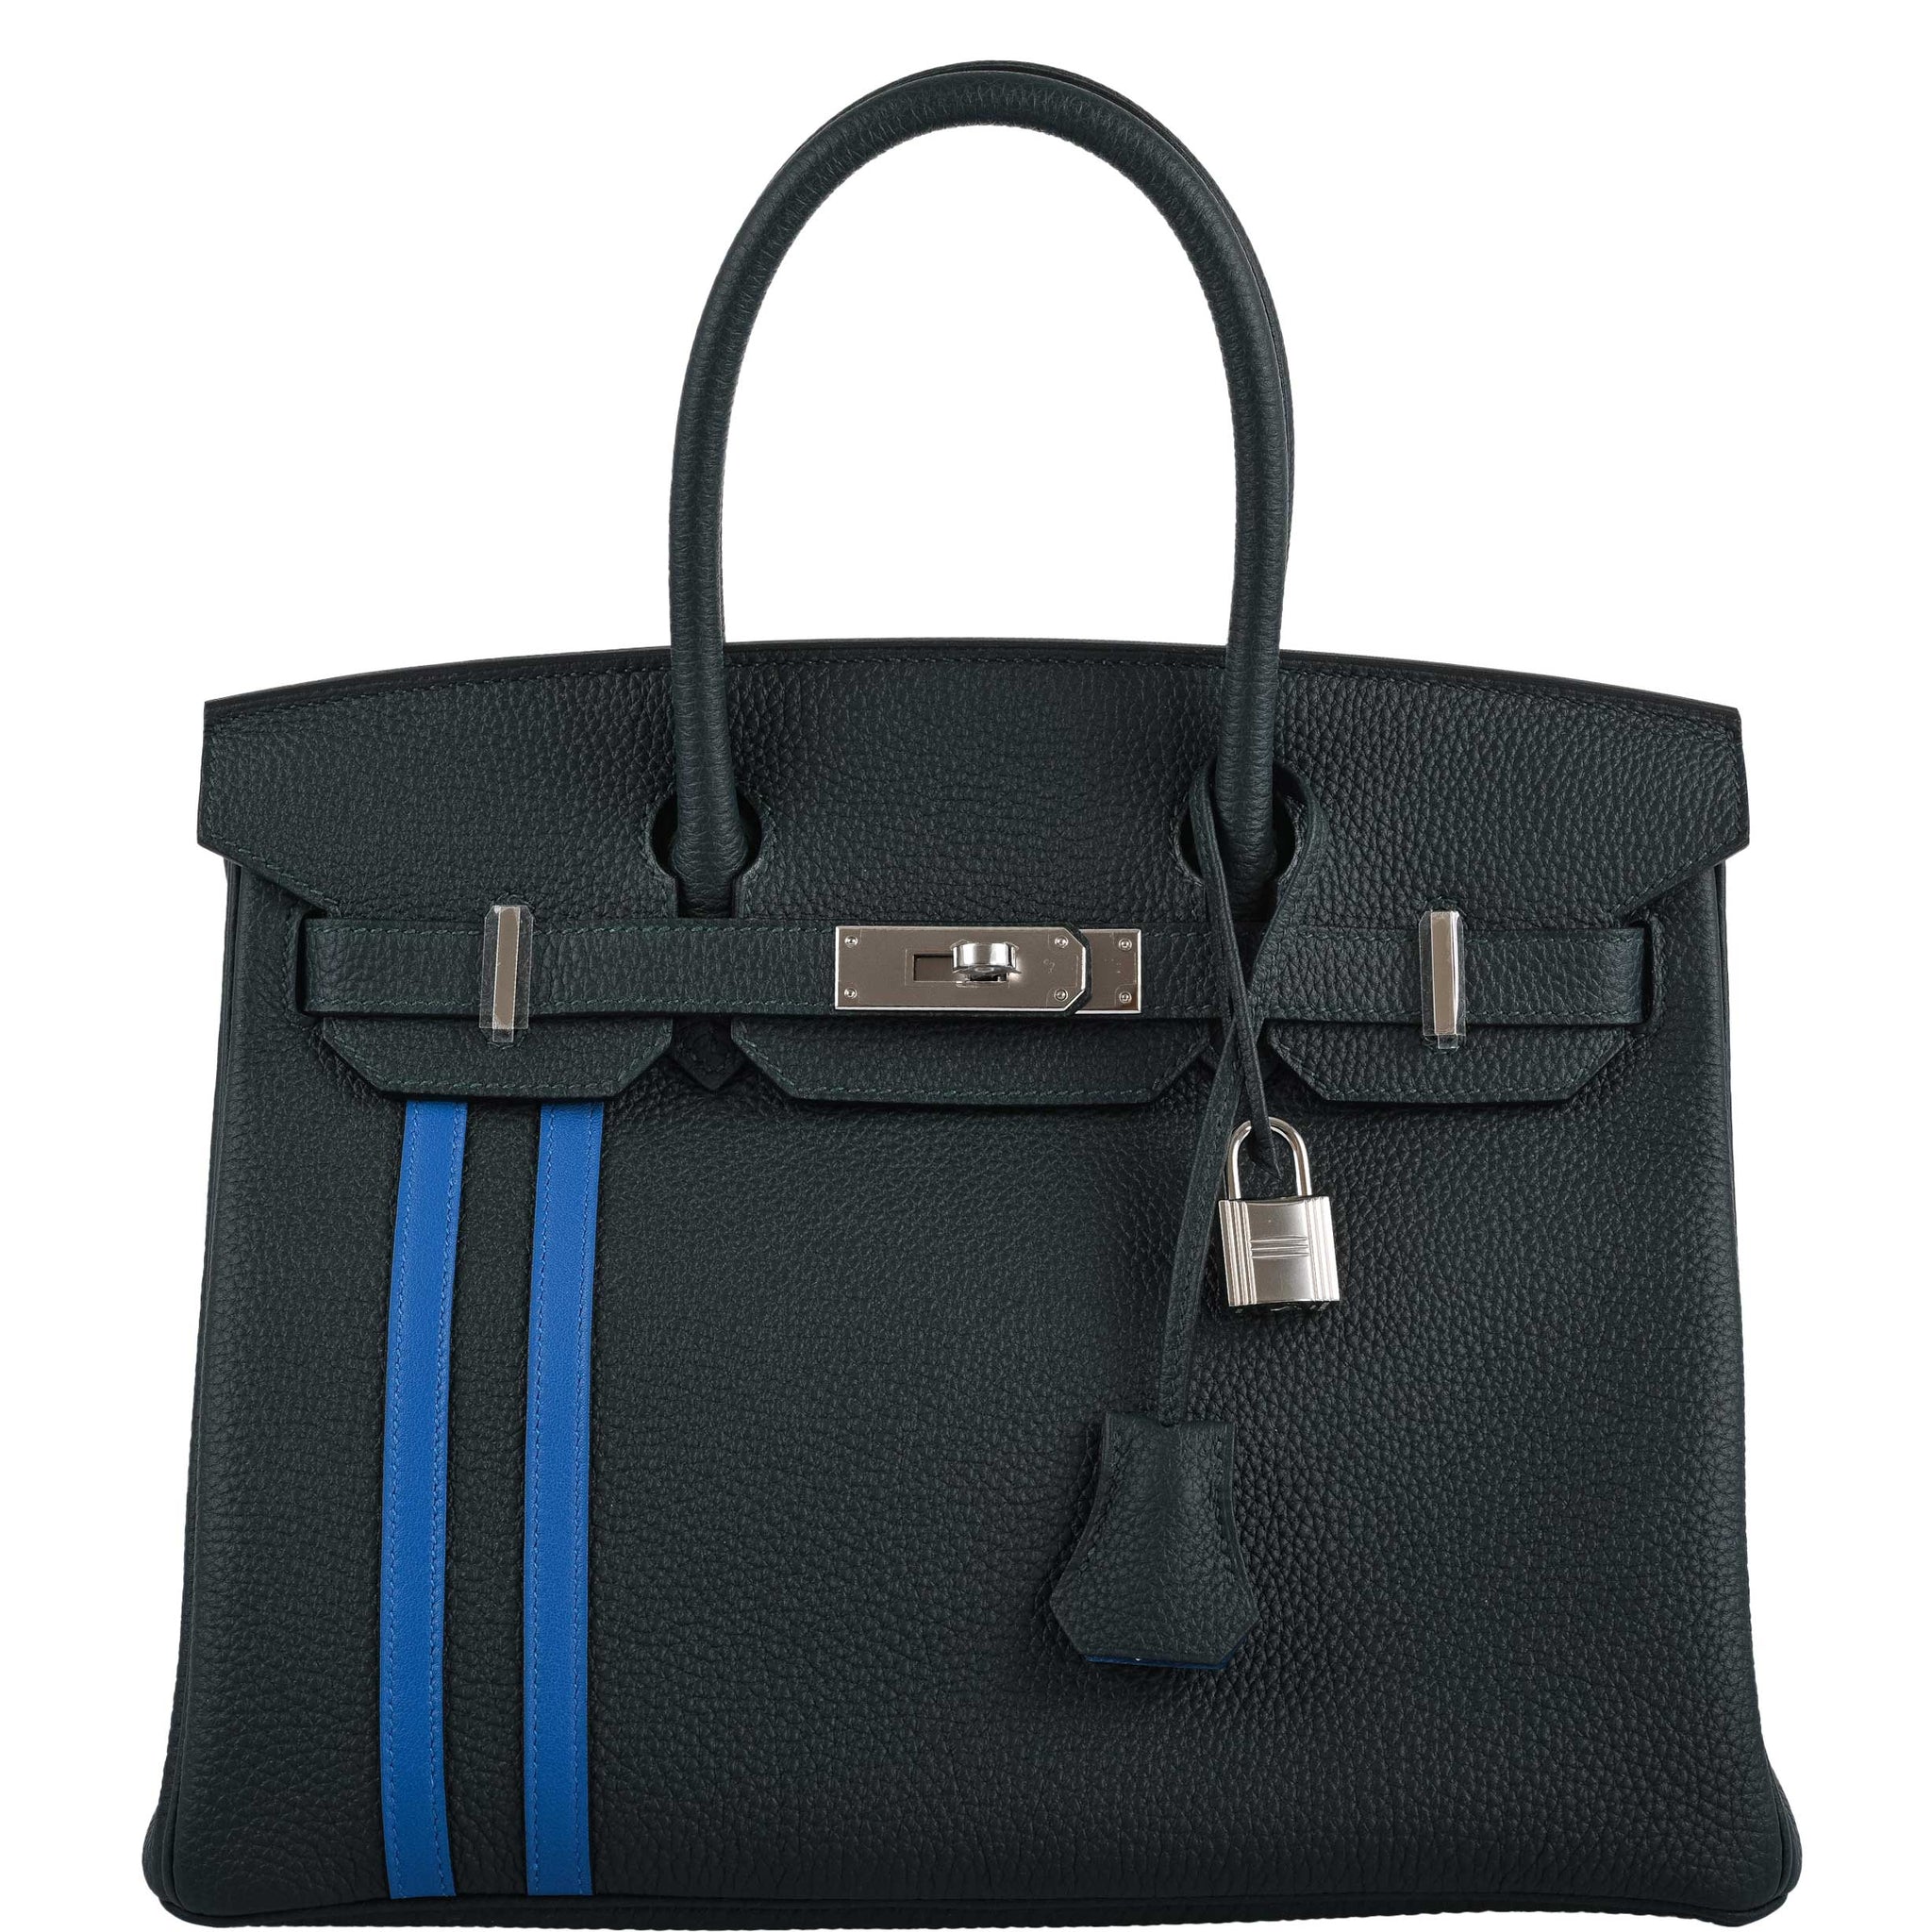 Hermes Birkin bag 35 Blue lin Togo leather Silver hardware